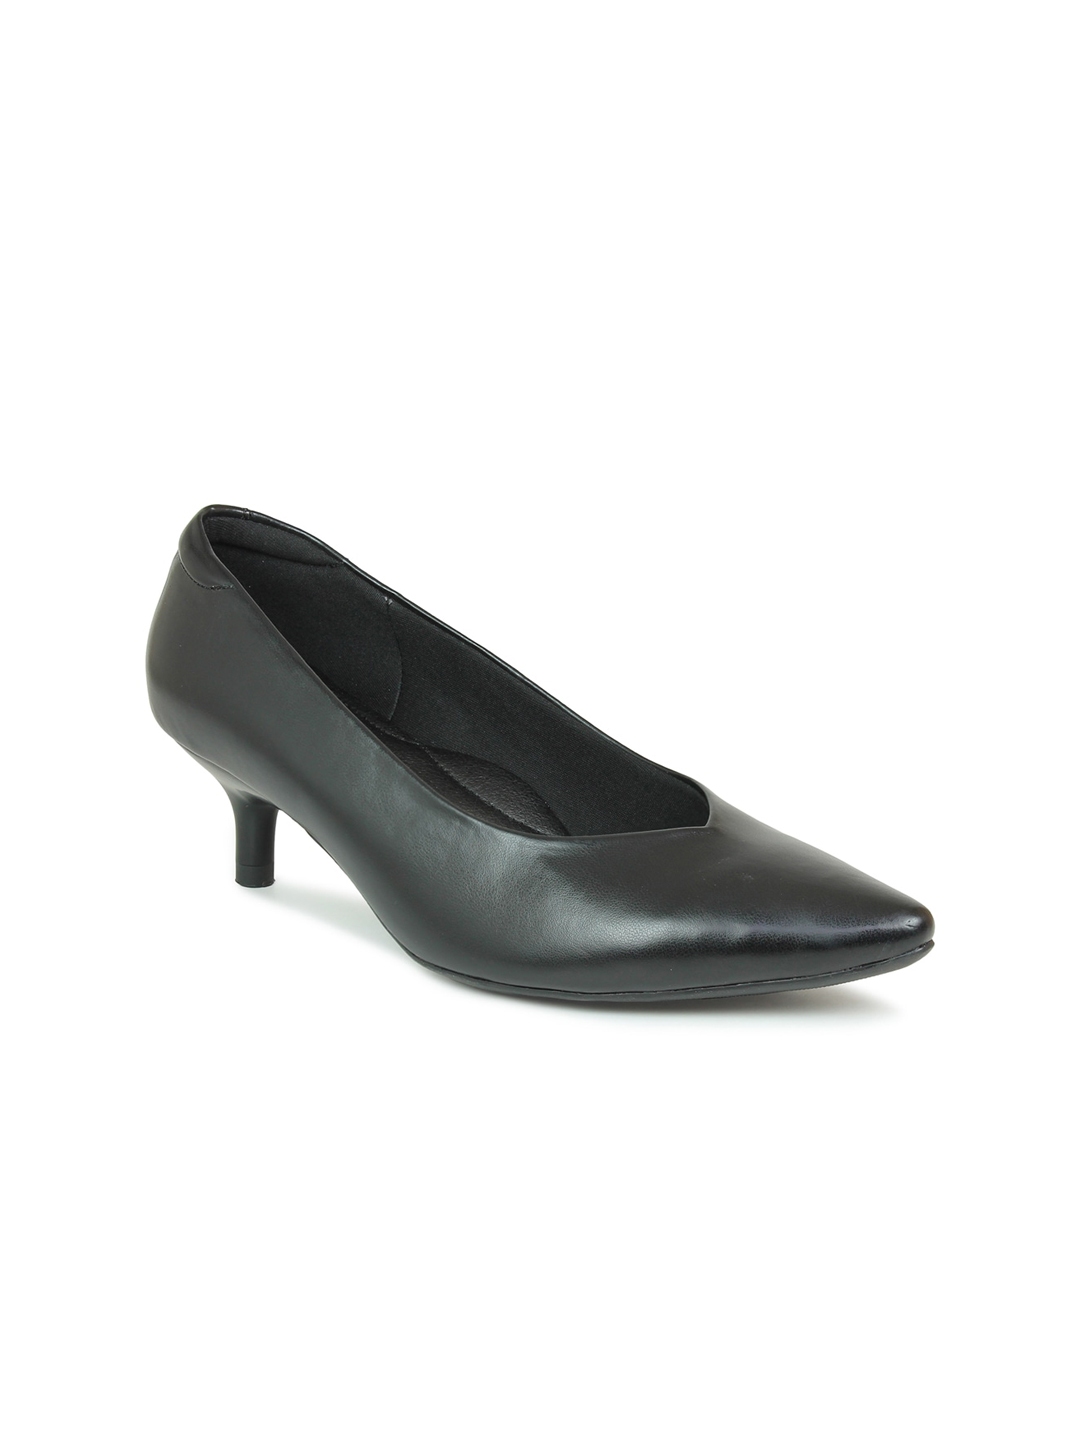 Buy Inc 5 Black Kitten Pumps - Heels for Women 17032396 | Myntra